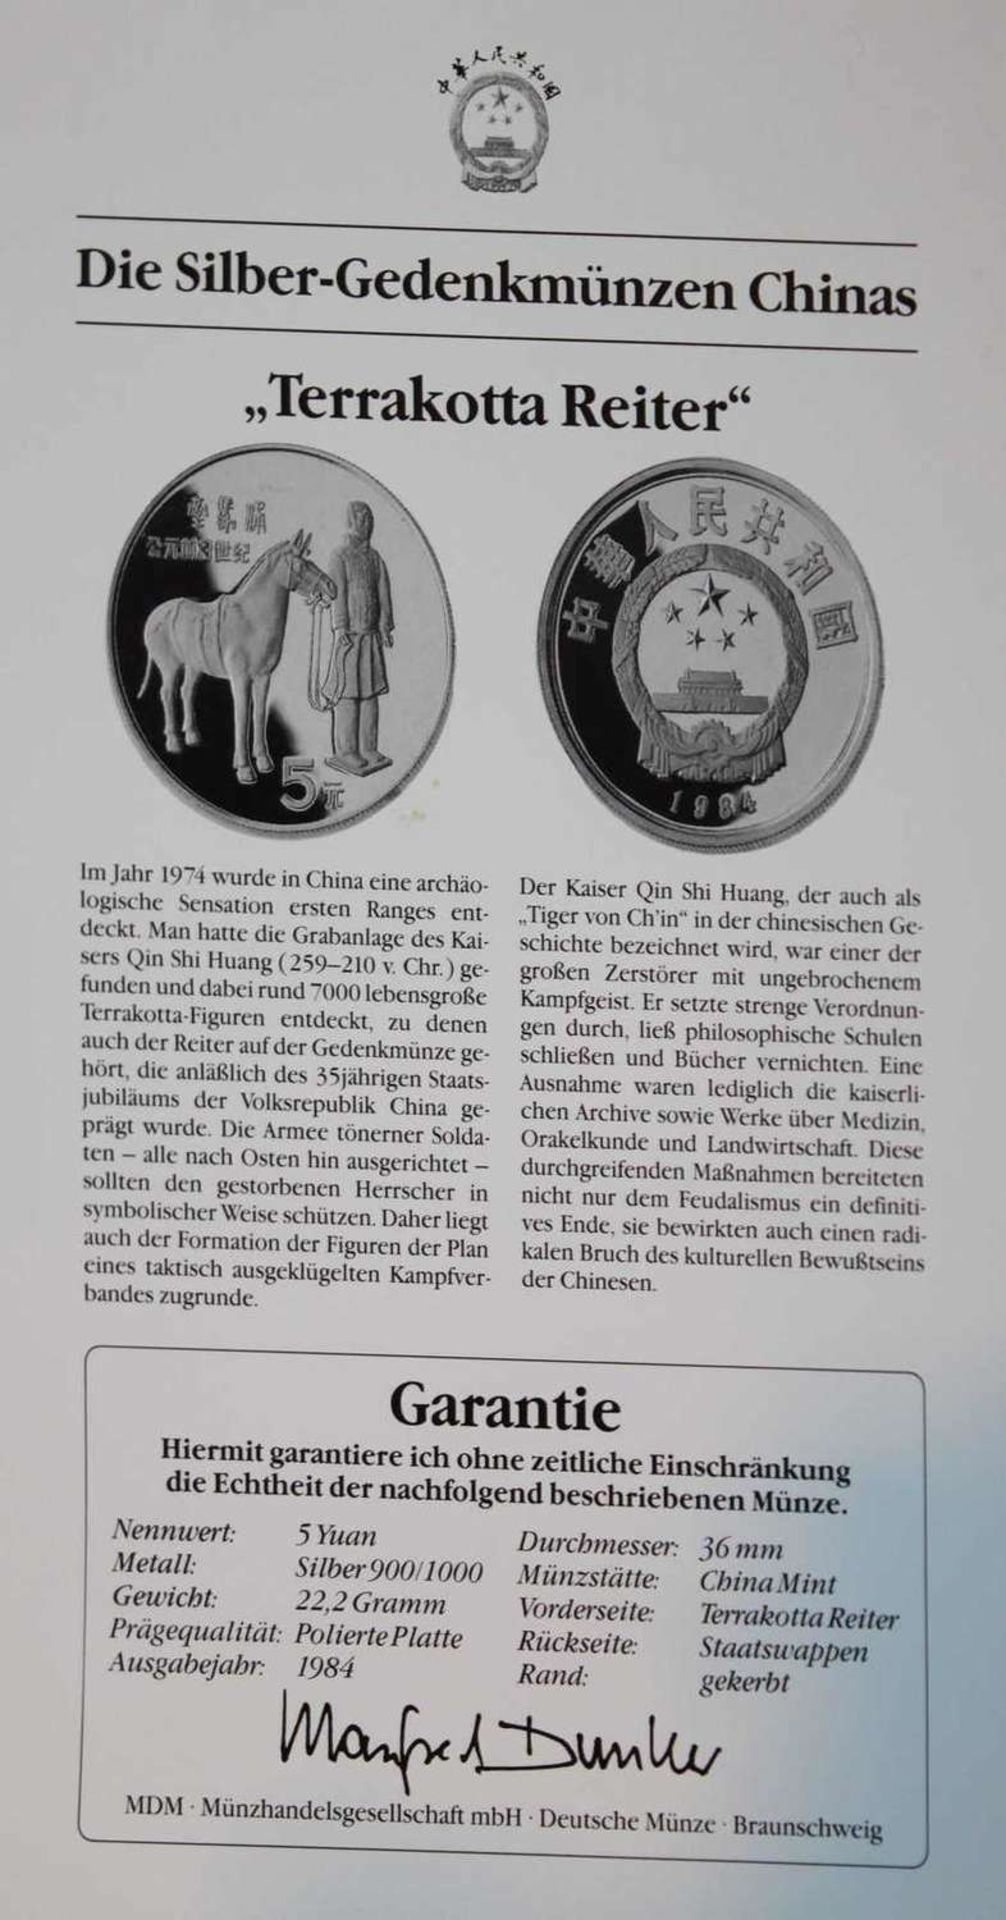 China 1984, 5 Yuan - Silbermünze "Terrakotta - Reiter". Silber 900. Gewicht: 22,2 gr.. In Kapsel. - Bild 2 aus 2